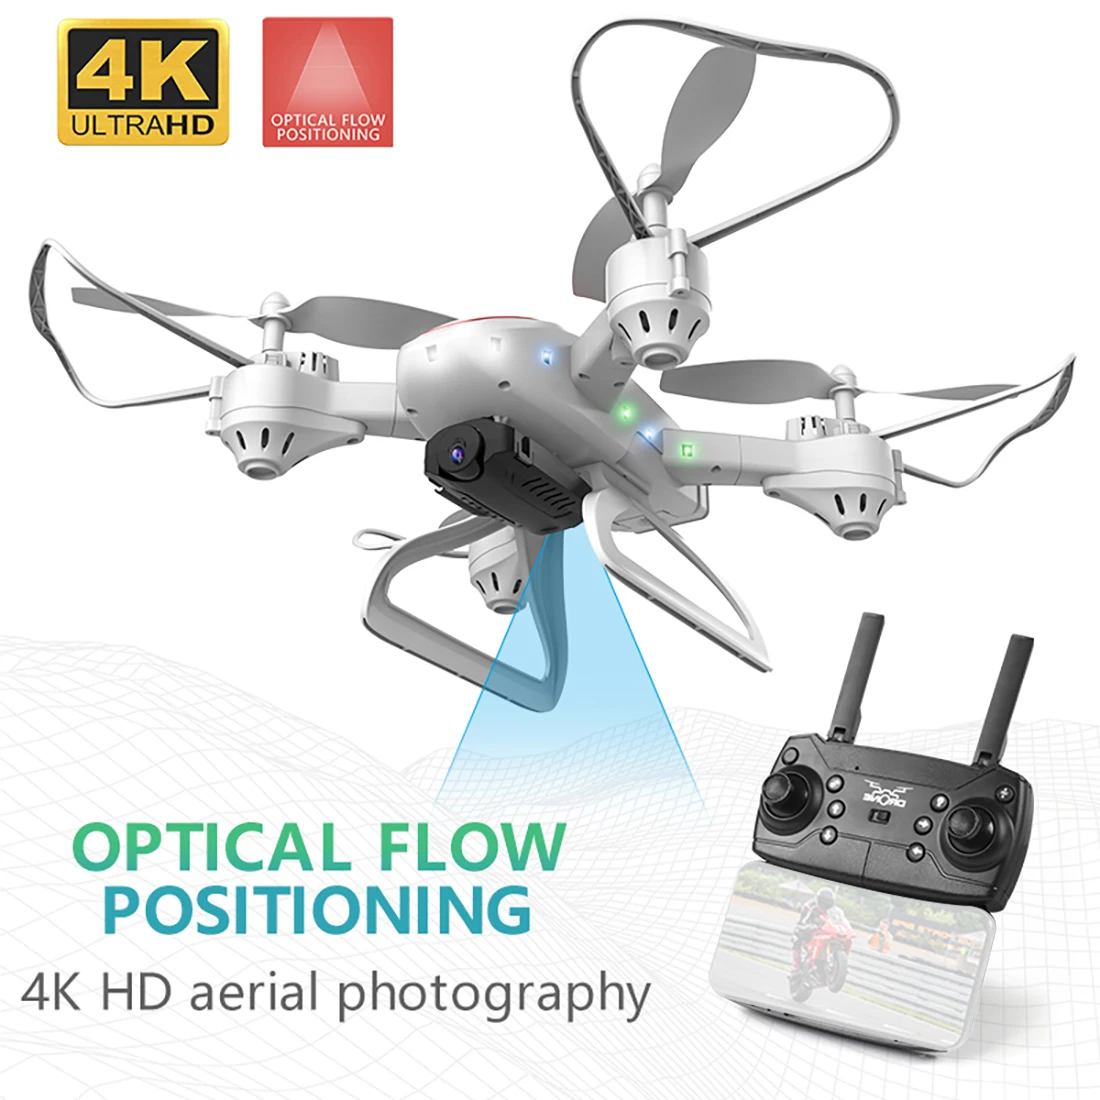 KY909 4K HD камера Дрон FPV Wi-Fi оптическое позиционирование потока RC самолет складной высота удерживает длительный срок службы батареи детские игрушки